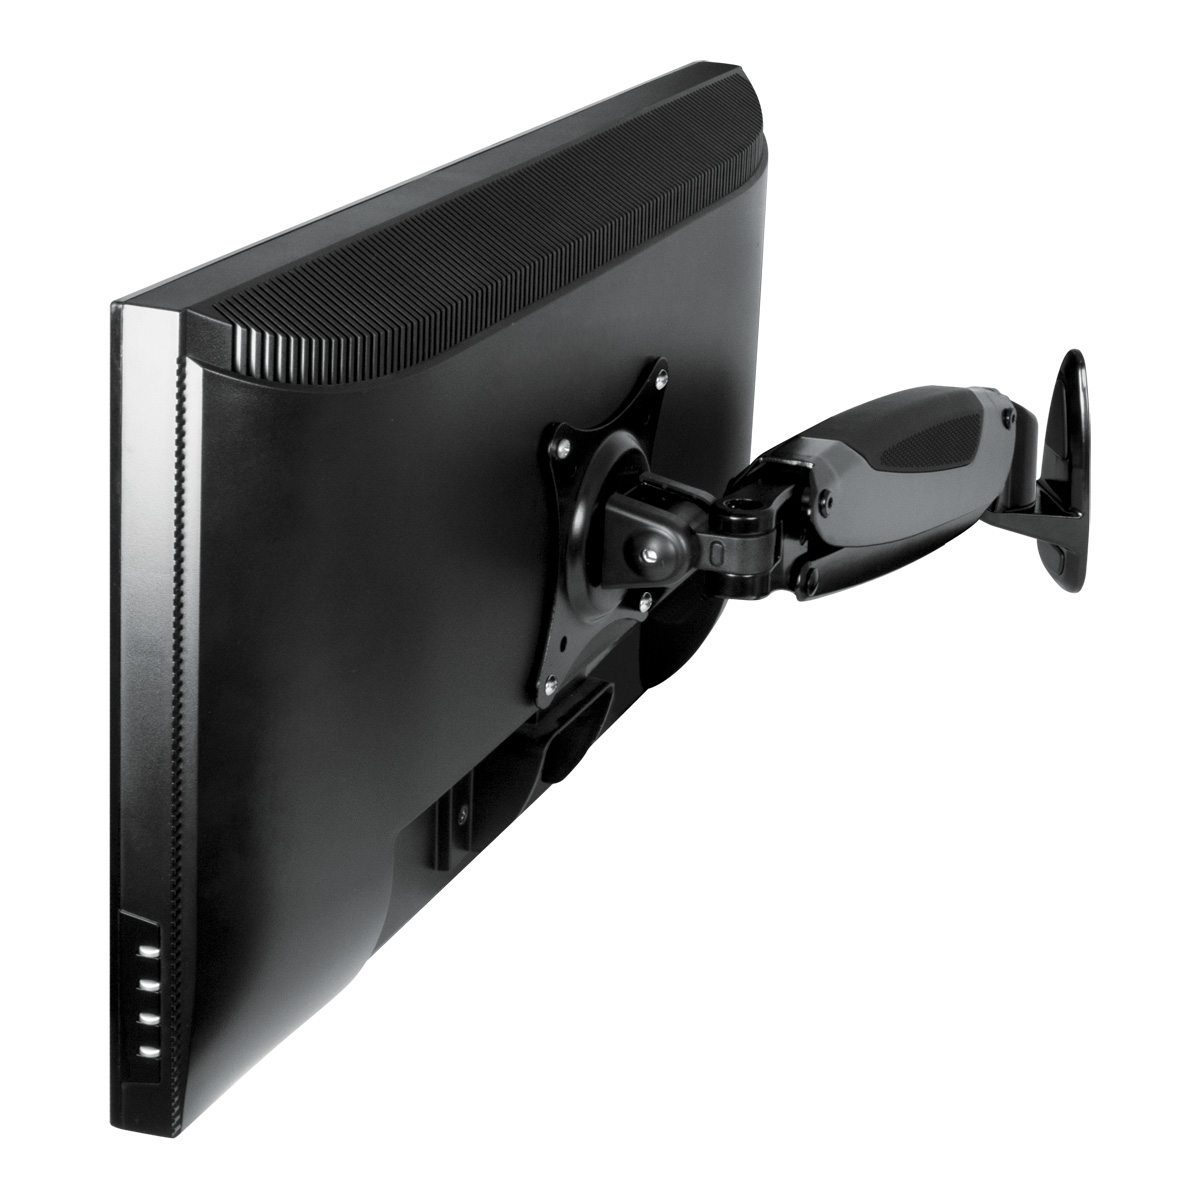 ARCTIC W1-3D Monitor-Wandhalterung Monitorarm, Schwarz